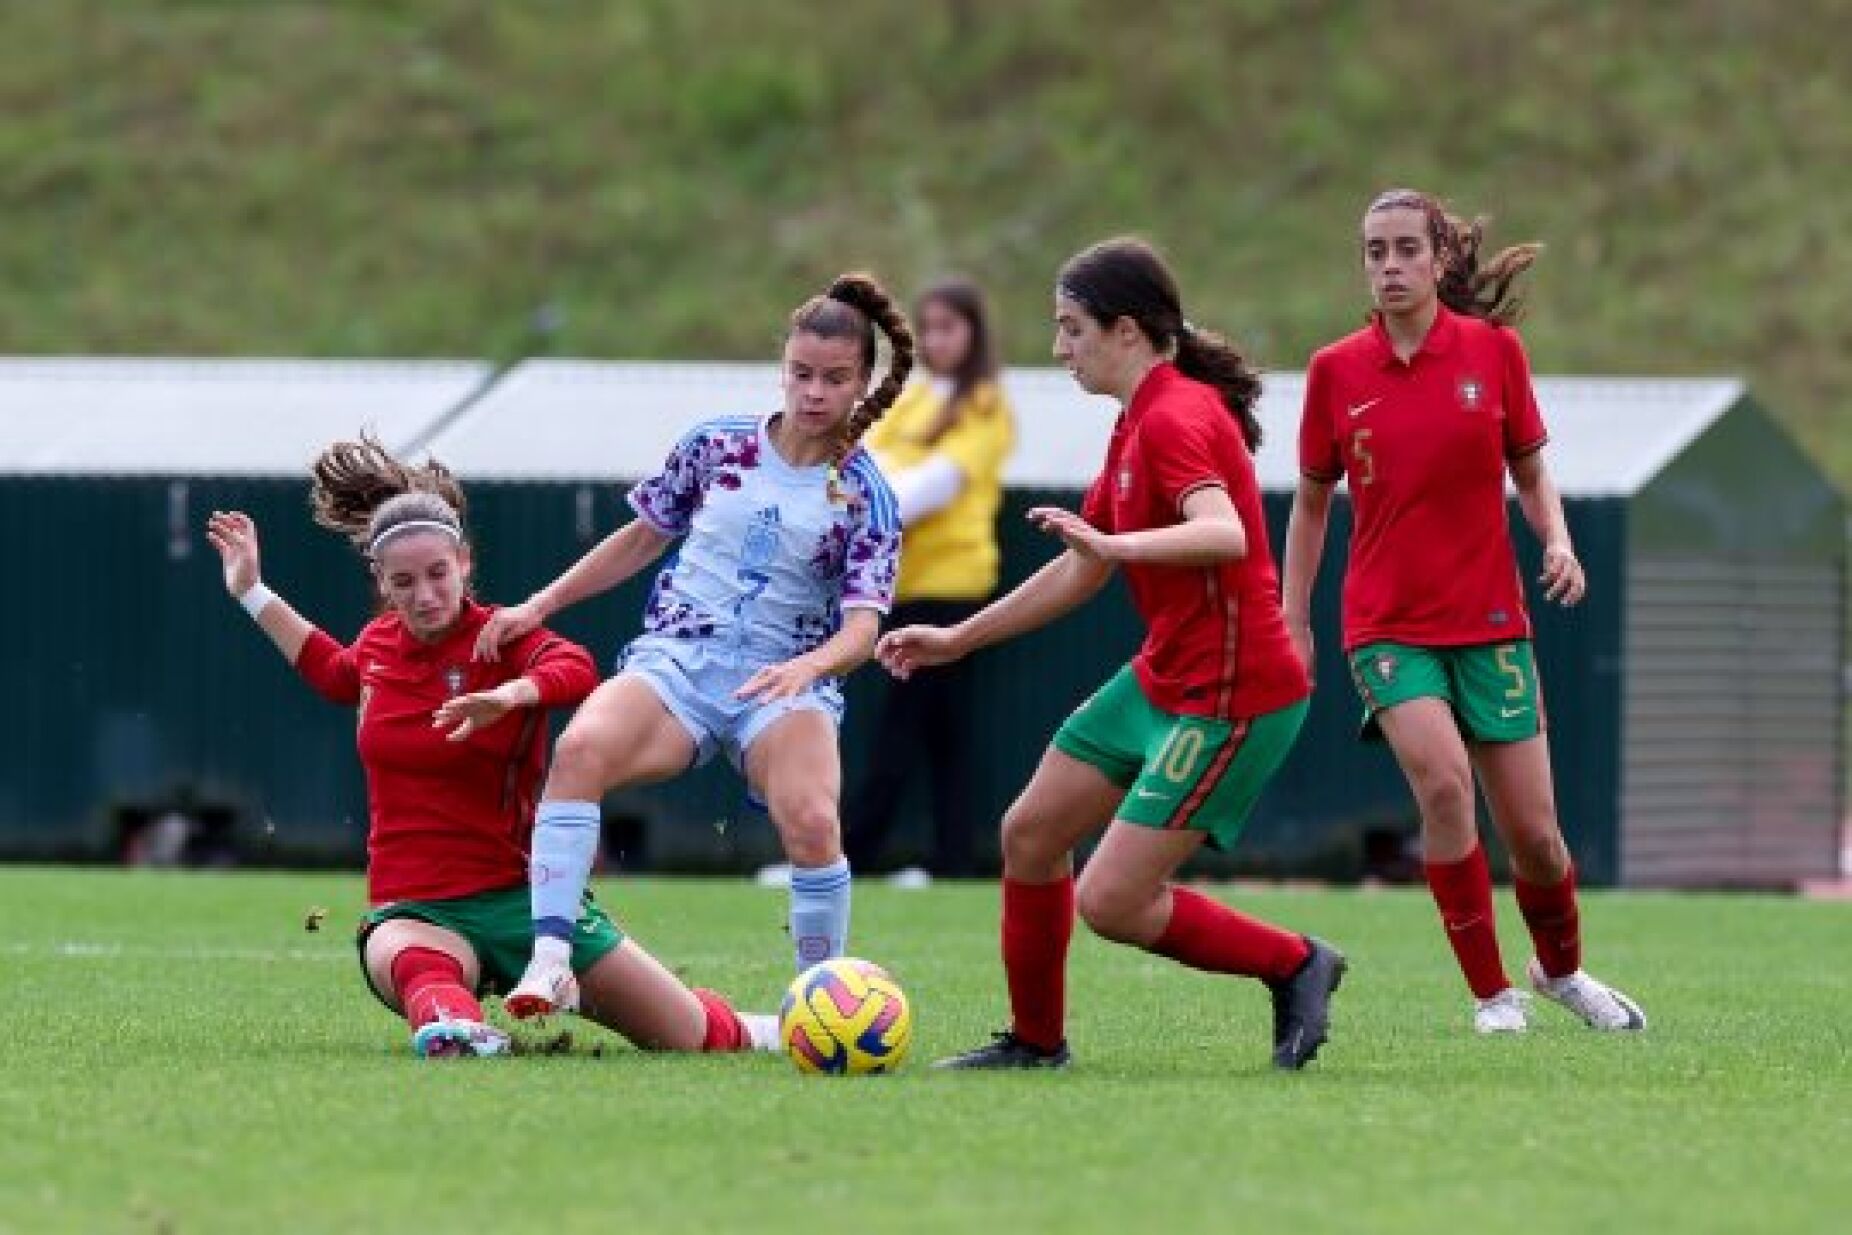 Seleção nacional feminina joga qualificação para Europeu sub17 em